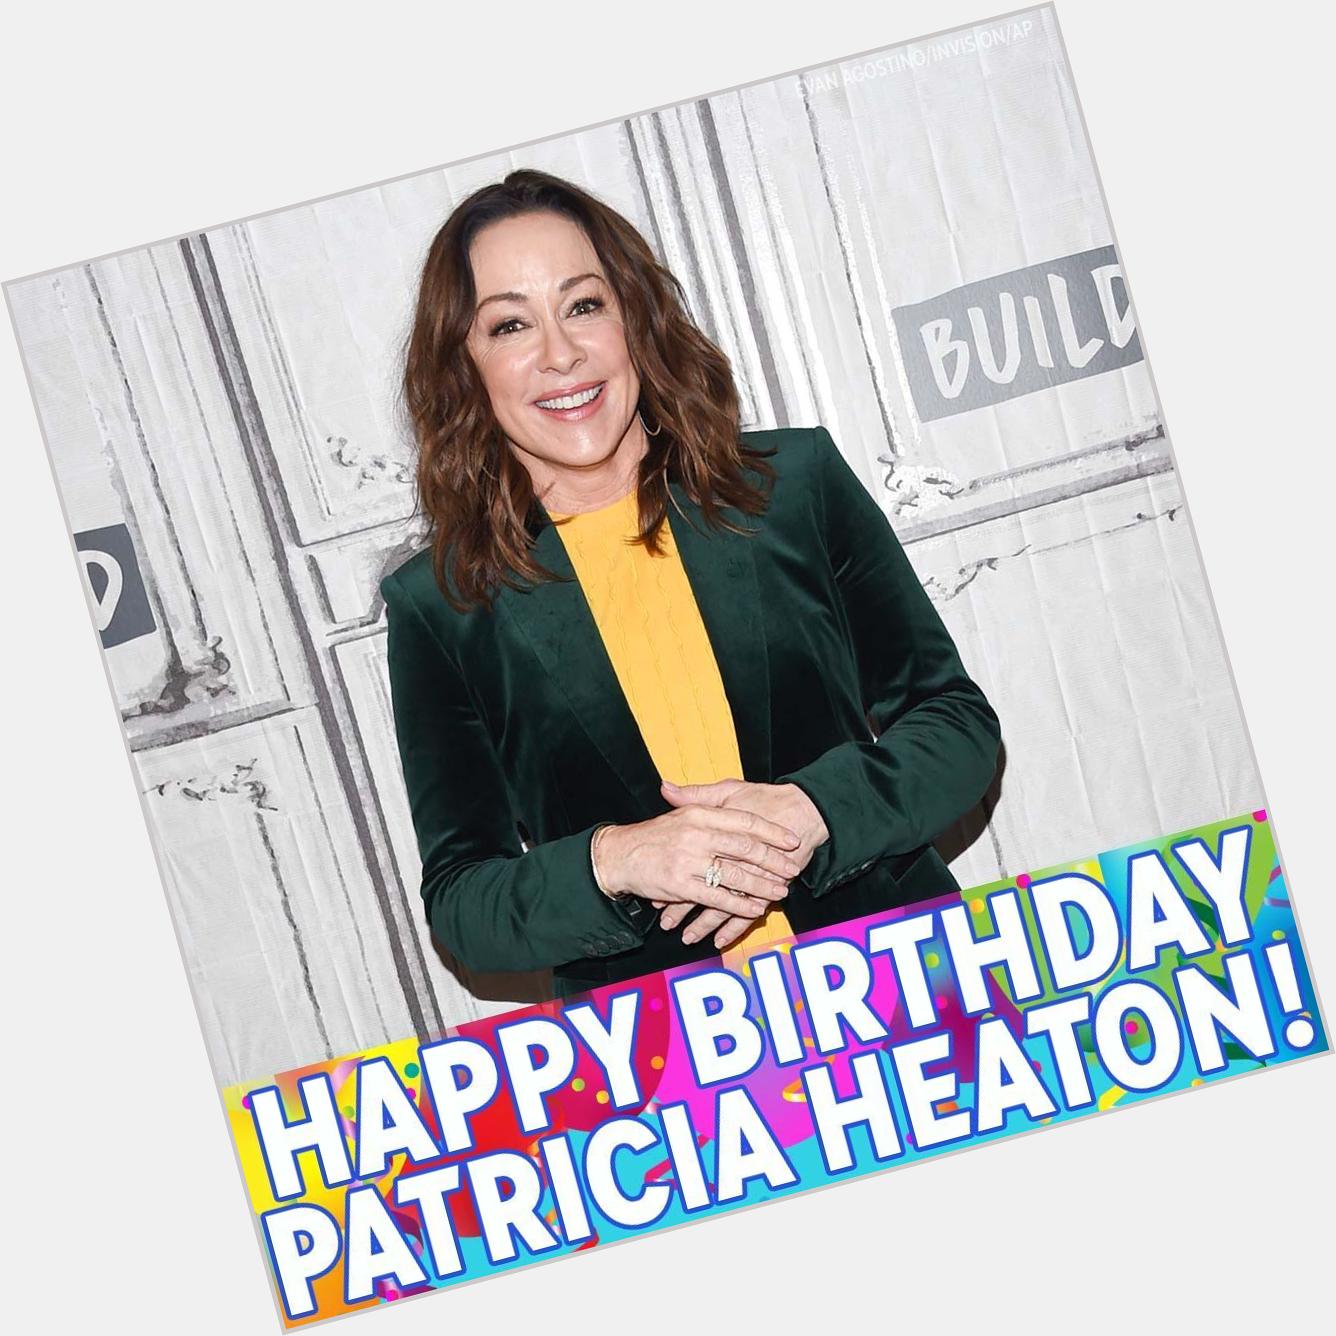 Happy birthday to Patricia Heaton! 